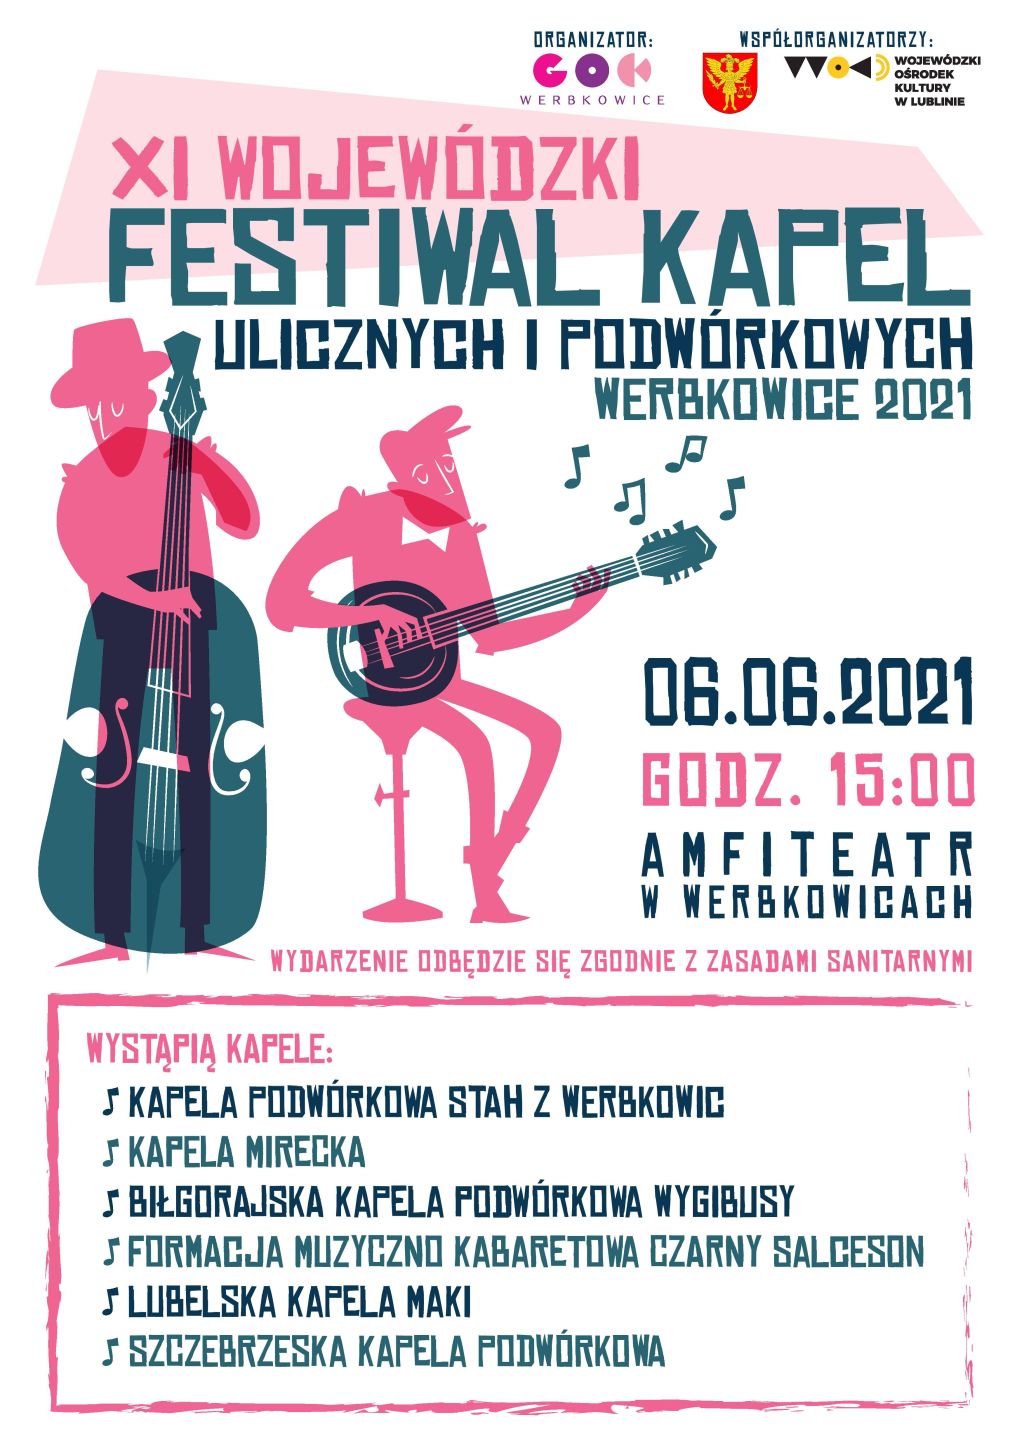 Zapraszamy na XI Wojewódzki Festiwal Kapel Ulicznych i Podwórkowych - Werbkowice 2021